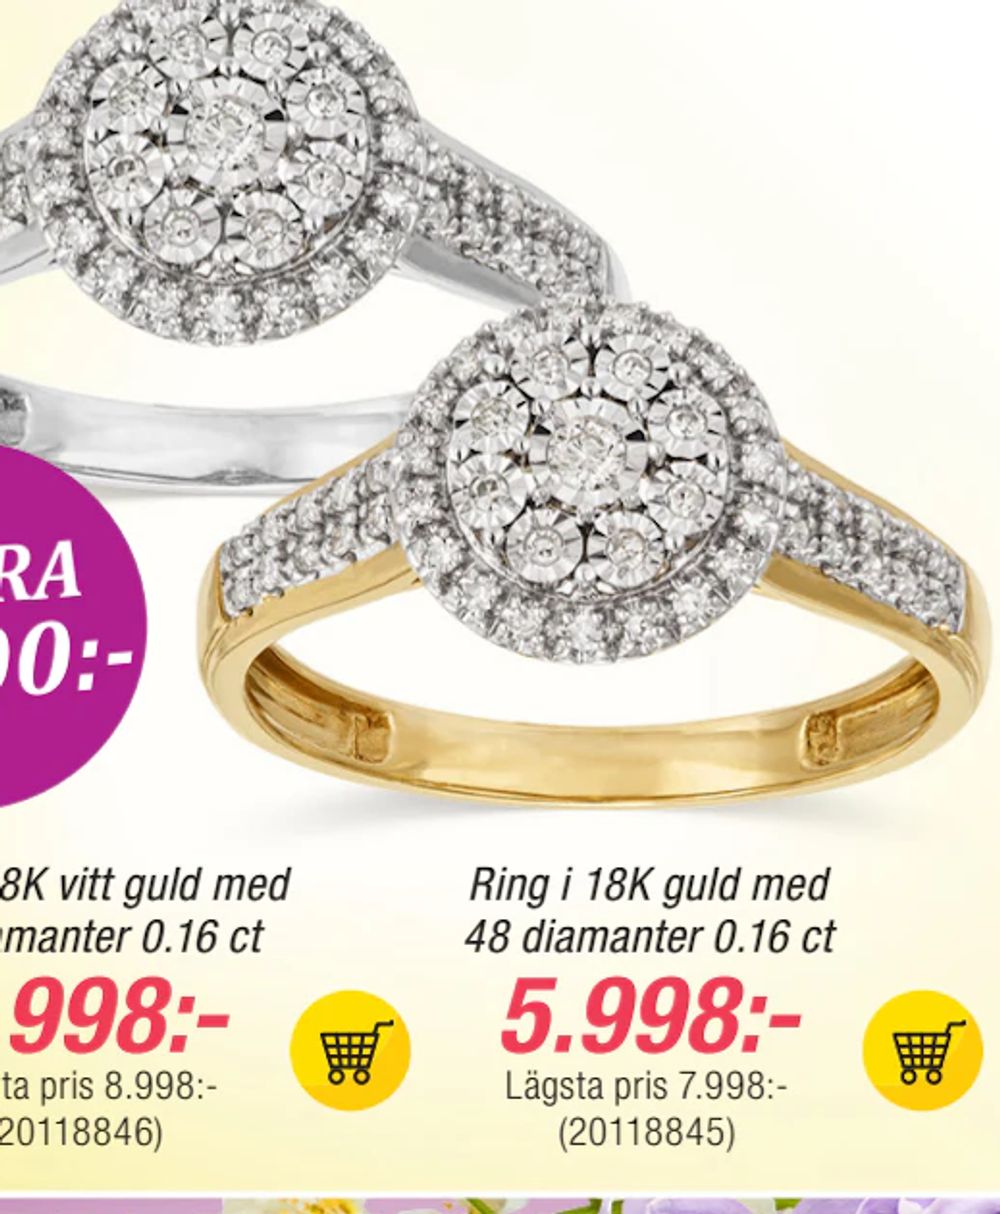 Erbjudanden på Ring i 18K guld med 48 diamanter 0.16 ct från Guldfynd för 5 998 kr